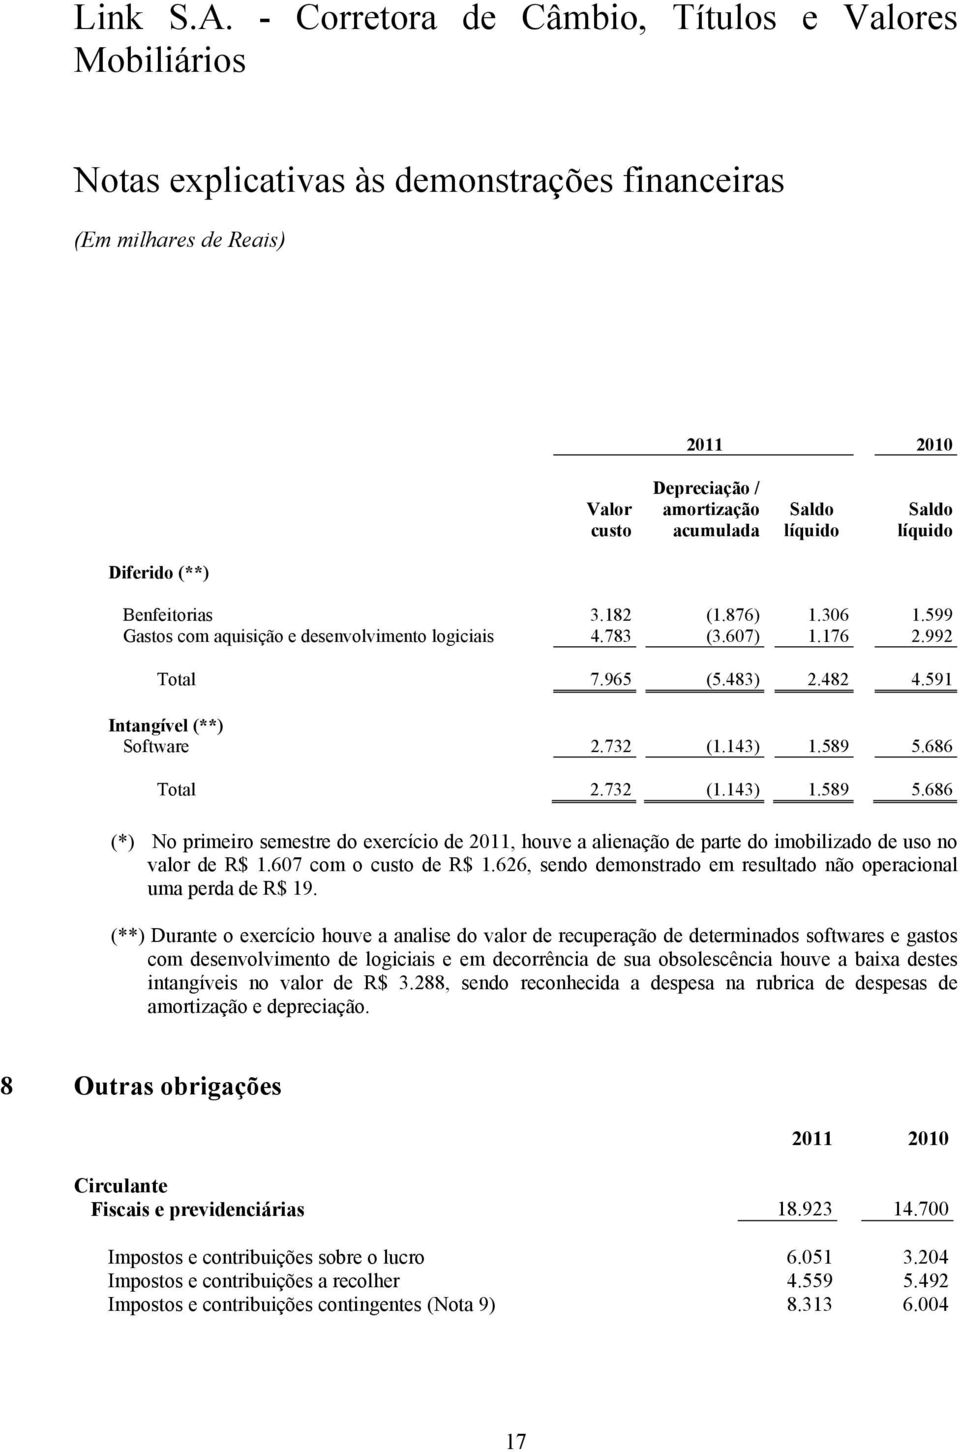 686 Total 2.732 (1.143) 1.589 5.686 (*) No primeiro semestre do exercício de 2011, houve a alienação de parte do imobilizado de uso no valor de R$ 1.607 com o custo de R$ 1.